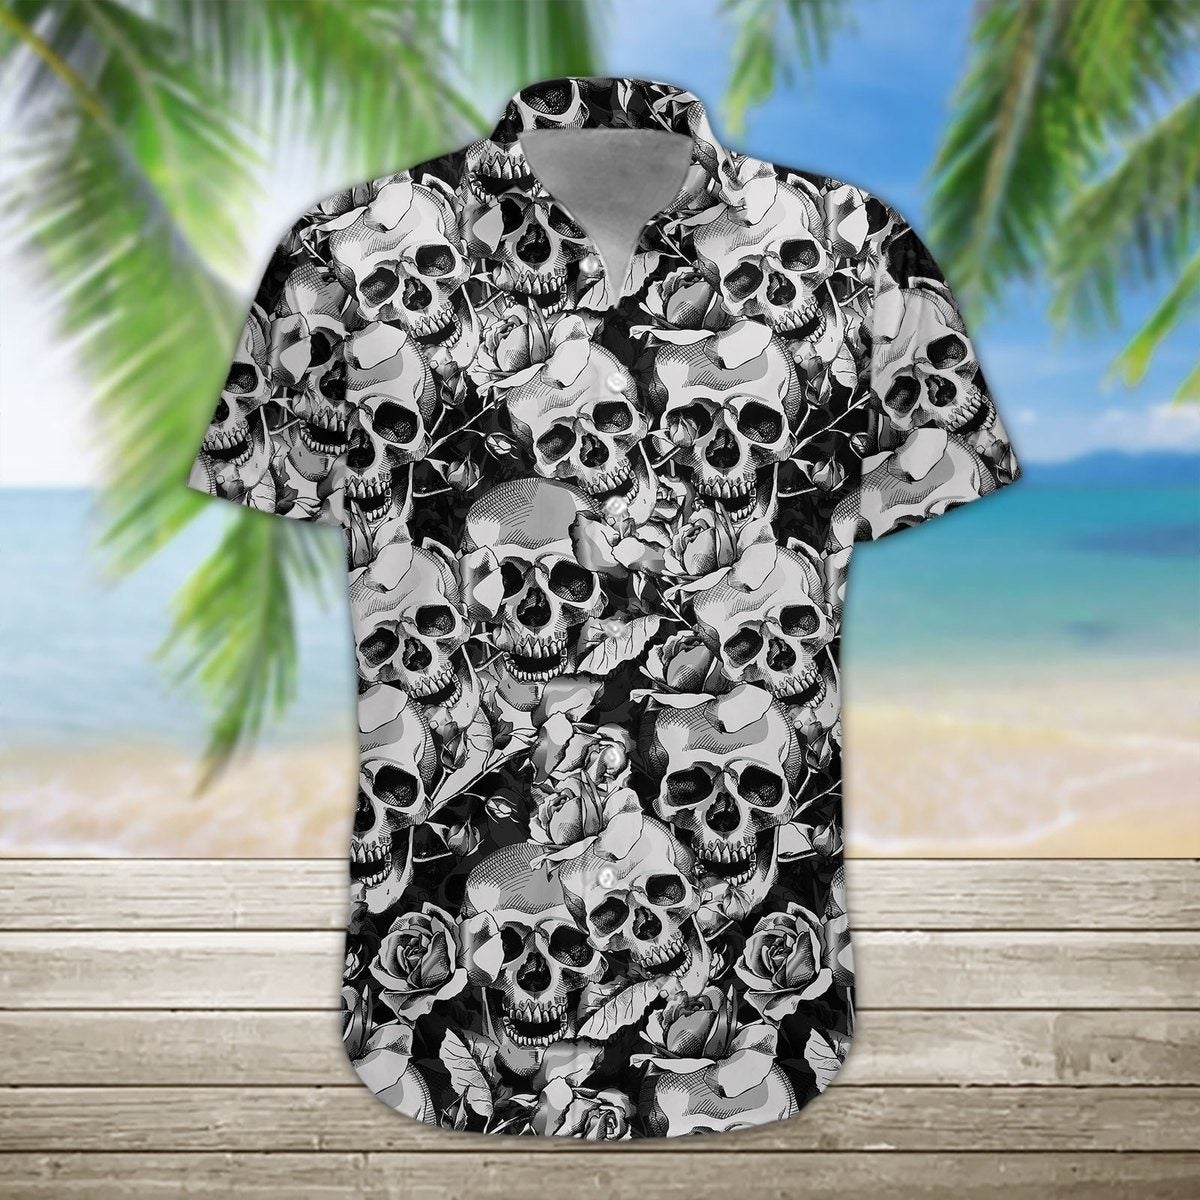 Skull Hawaiian Shirt For Men Women Adult Hl1330-1